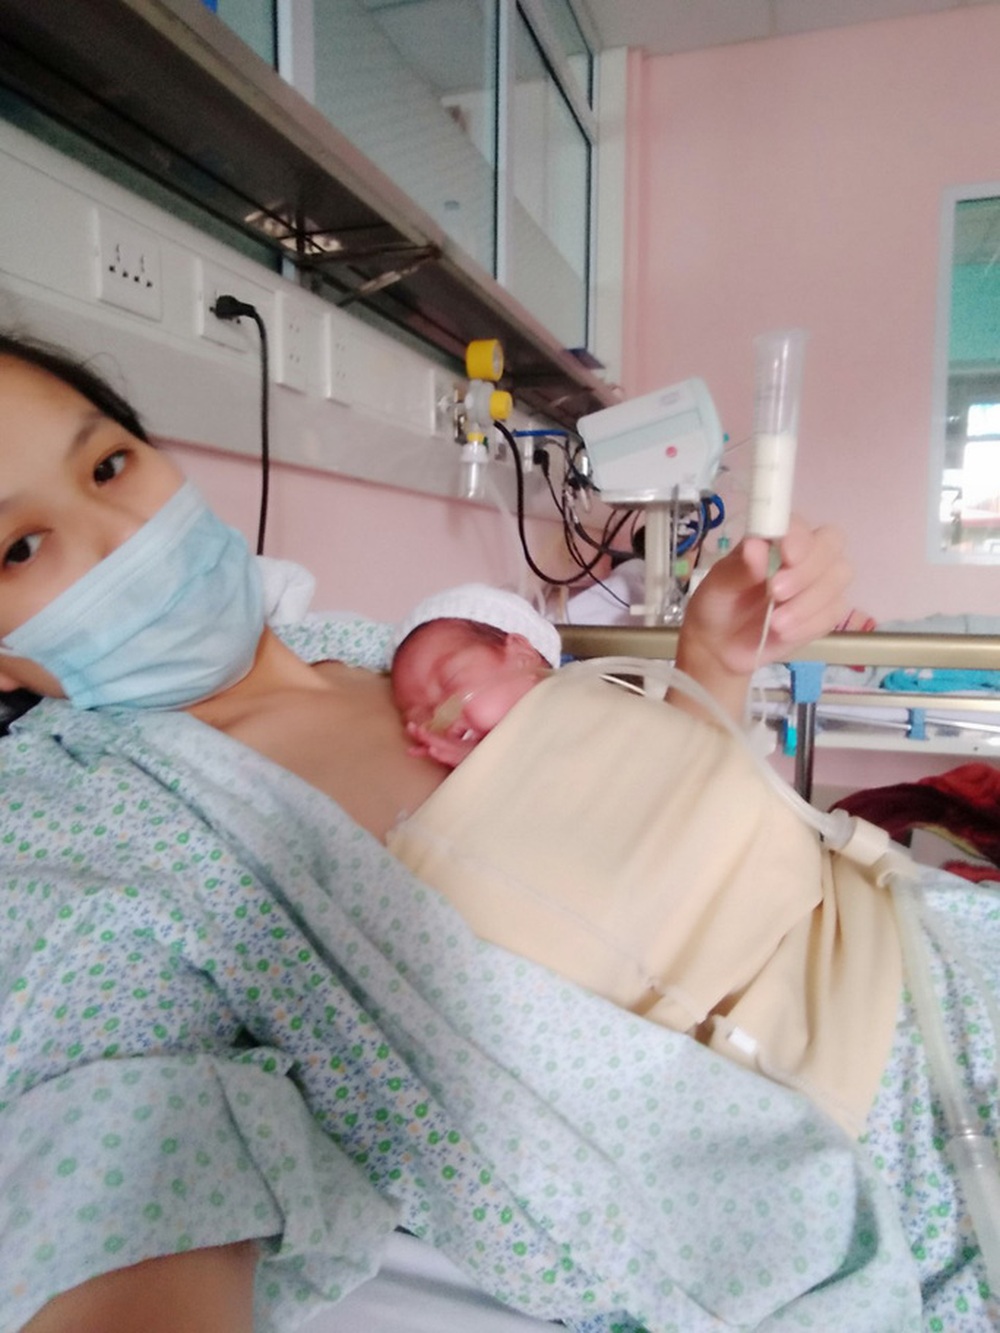 Hành trình kỳ diệu nuôi sống bé sinh non nhẹ cân nhất Việt Nam từ 480 gr lên 2,1 kg - Ảnh 1.